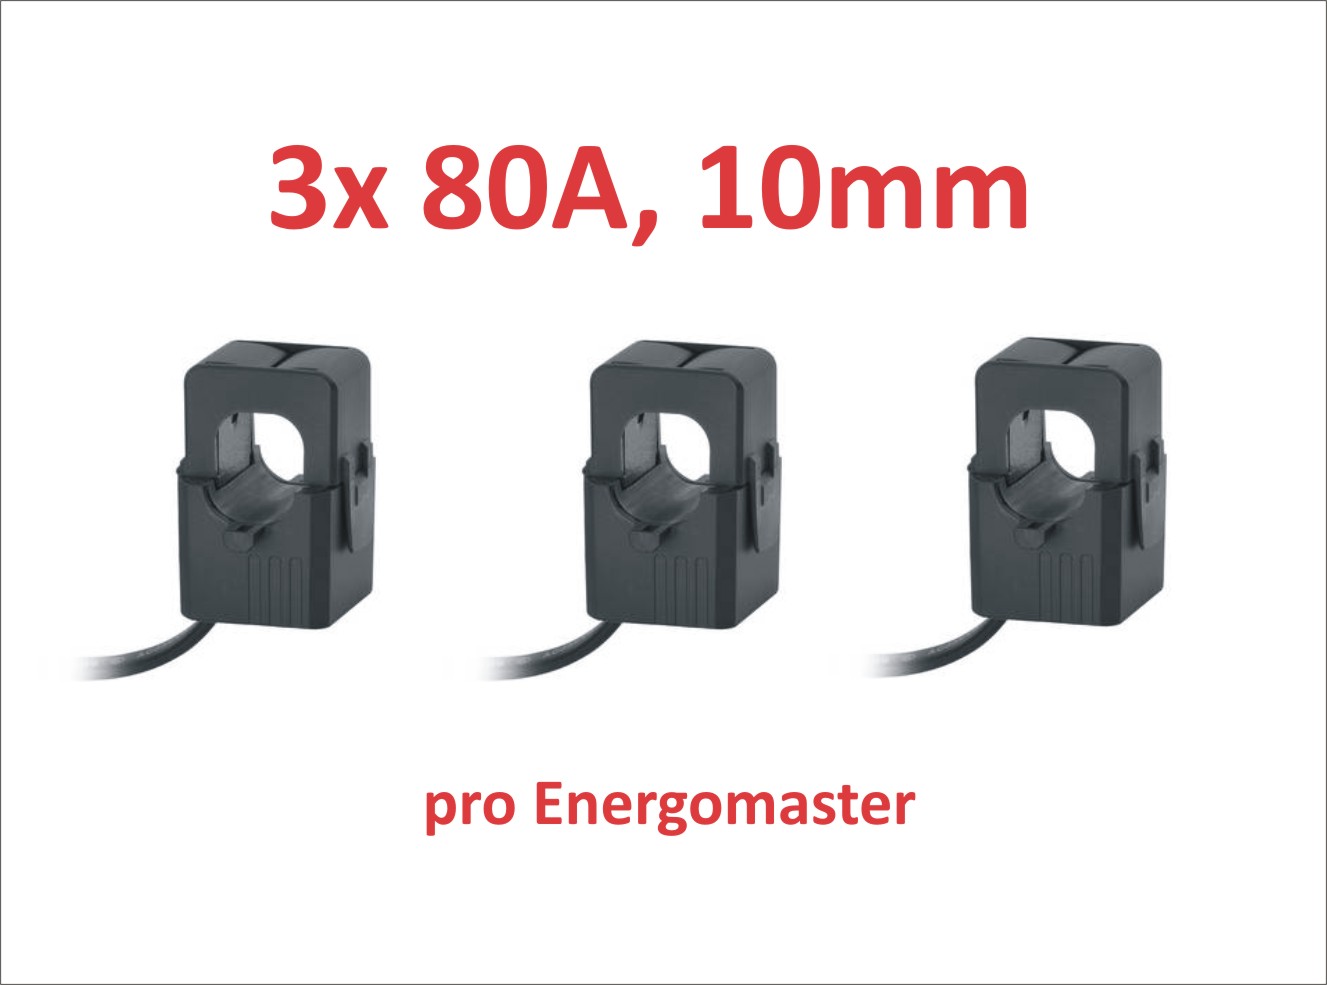 CT proudové cívky 80A, 10 mm, pro Energomaster - 3 ks